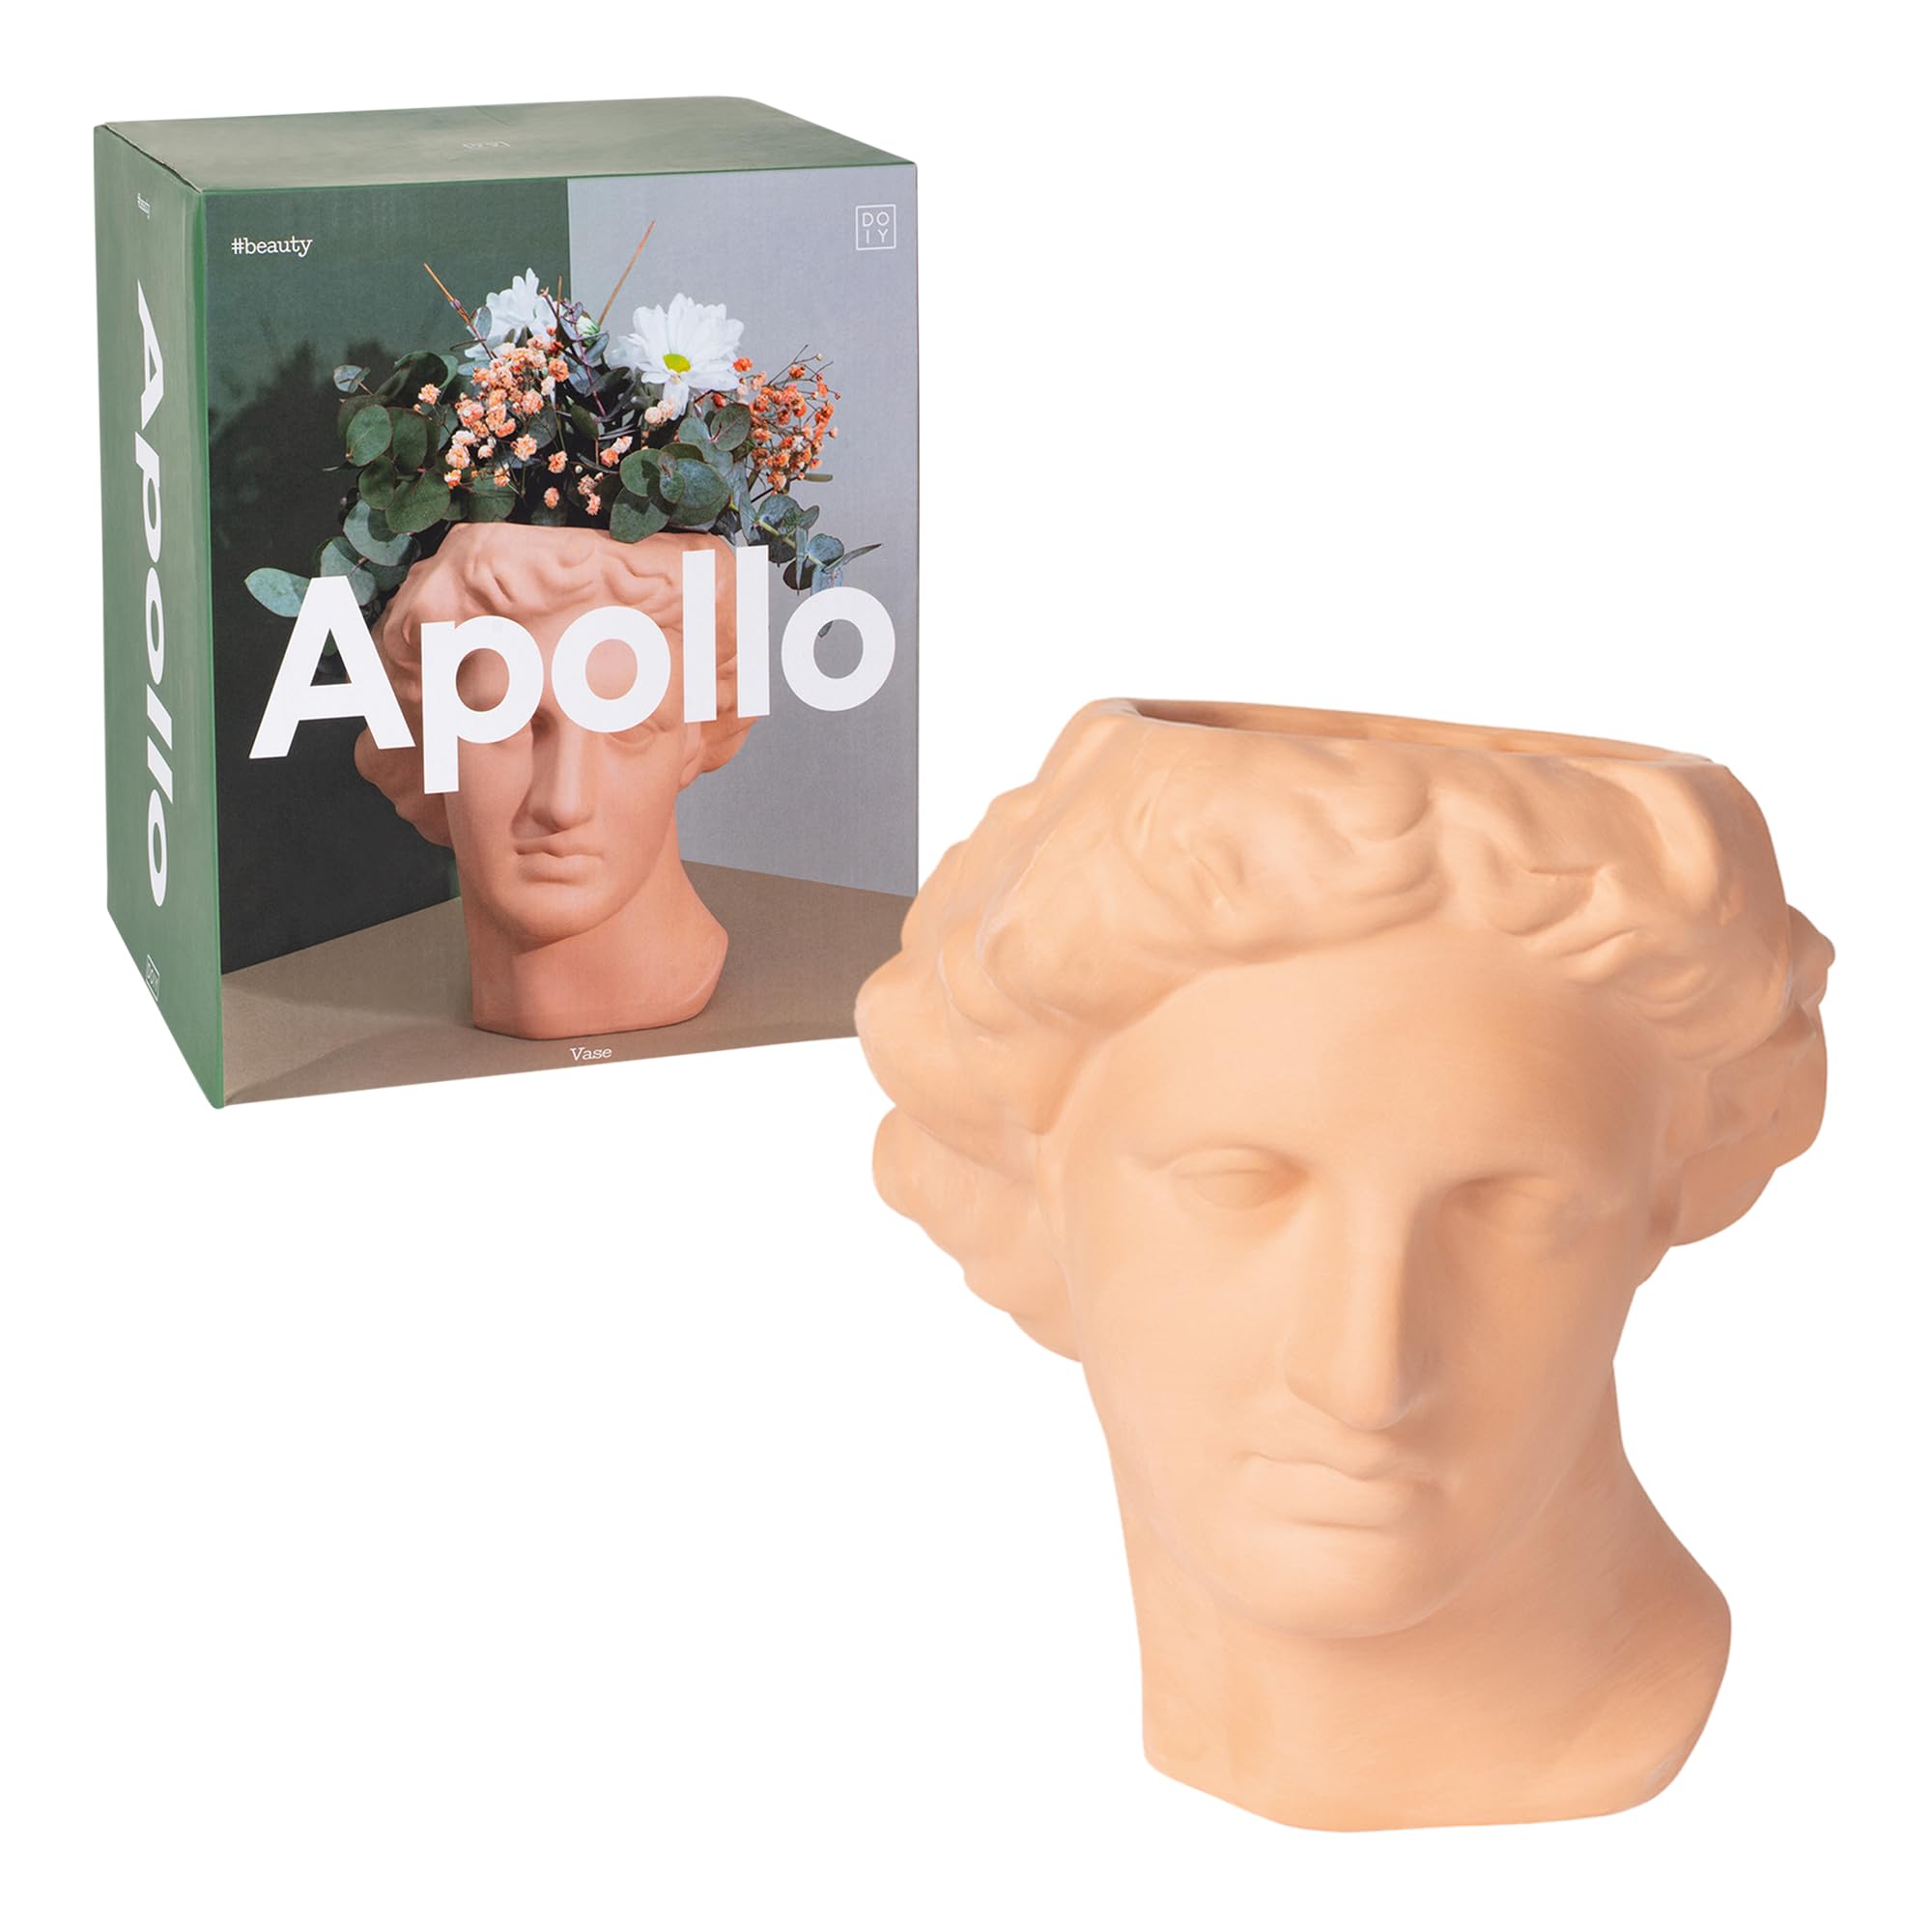 DOIY - Moderne dekorative Vase - Design in Form des griechischen Gottes Apollon - Hergestellt aus Keramik - Blumenvase - Dekorativer Blumenhalter - Braun - 20x20x23,4 cm